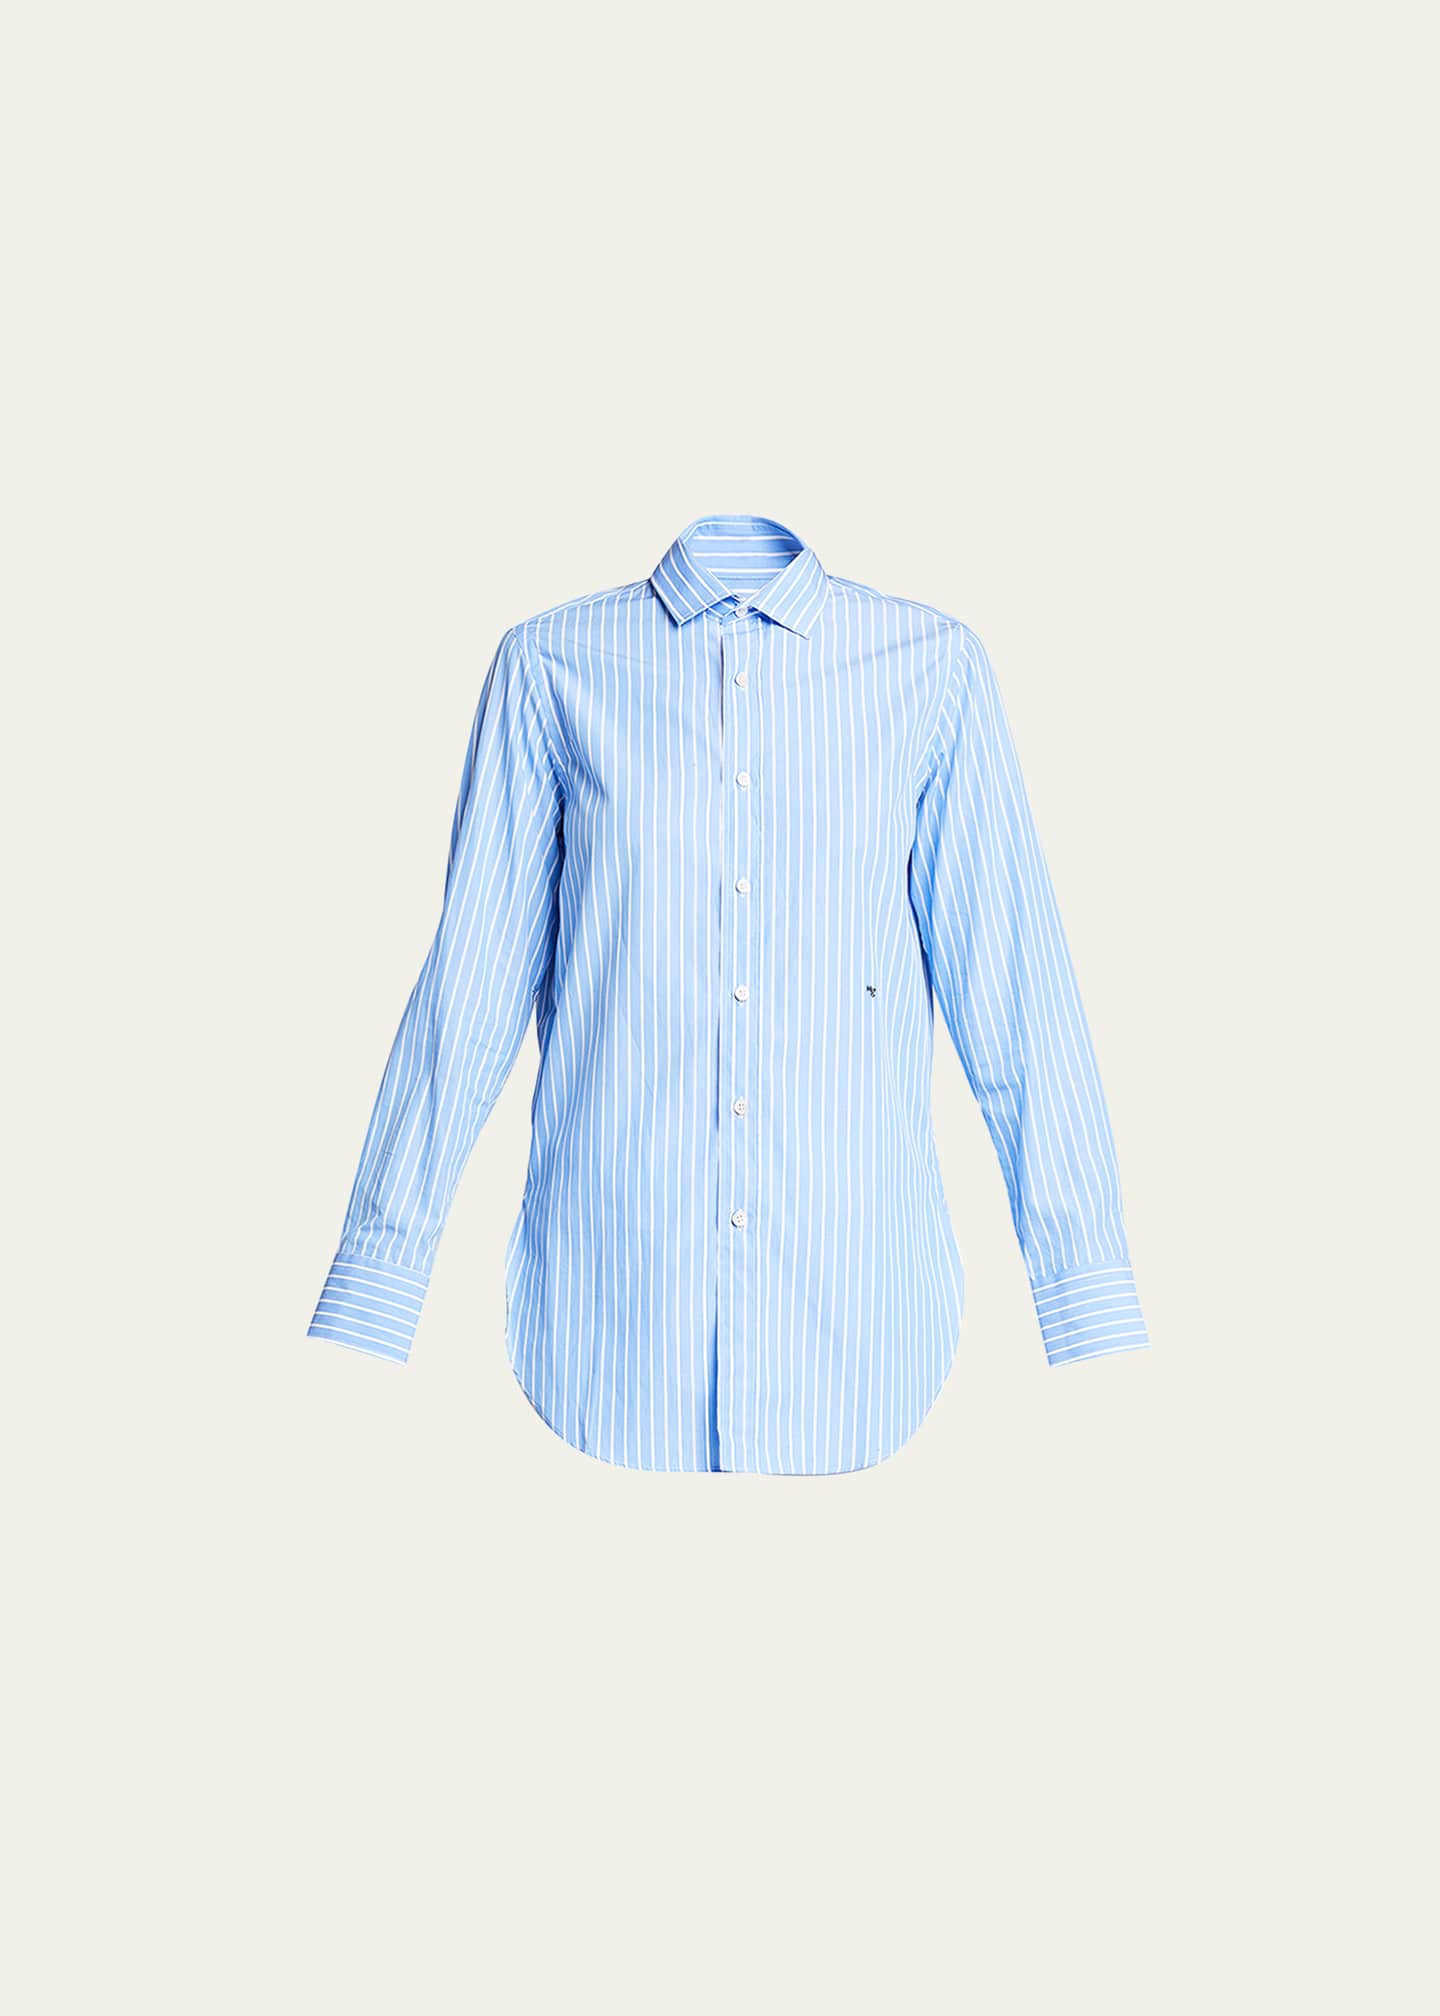 HOMMEGIRLS Classic Striped Button-Up Shirt - Bergdorf Goodman